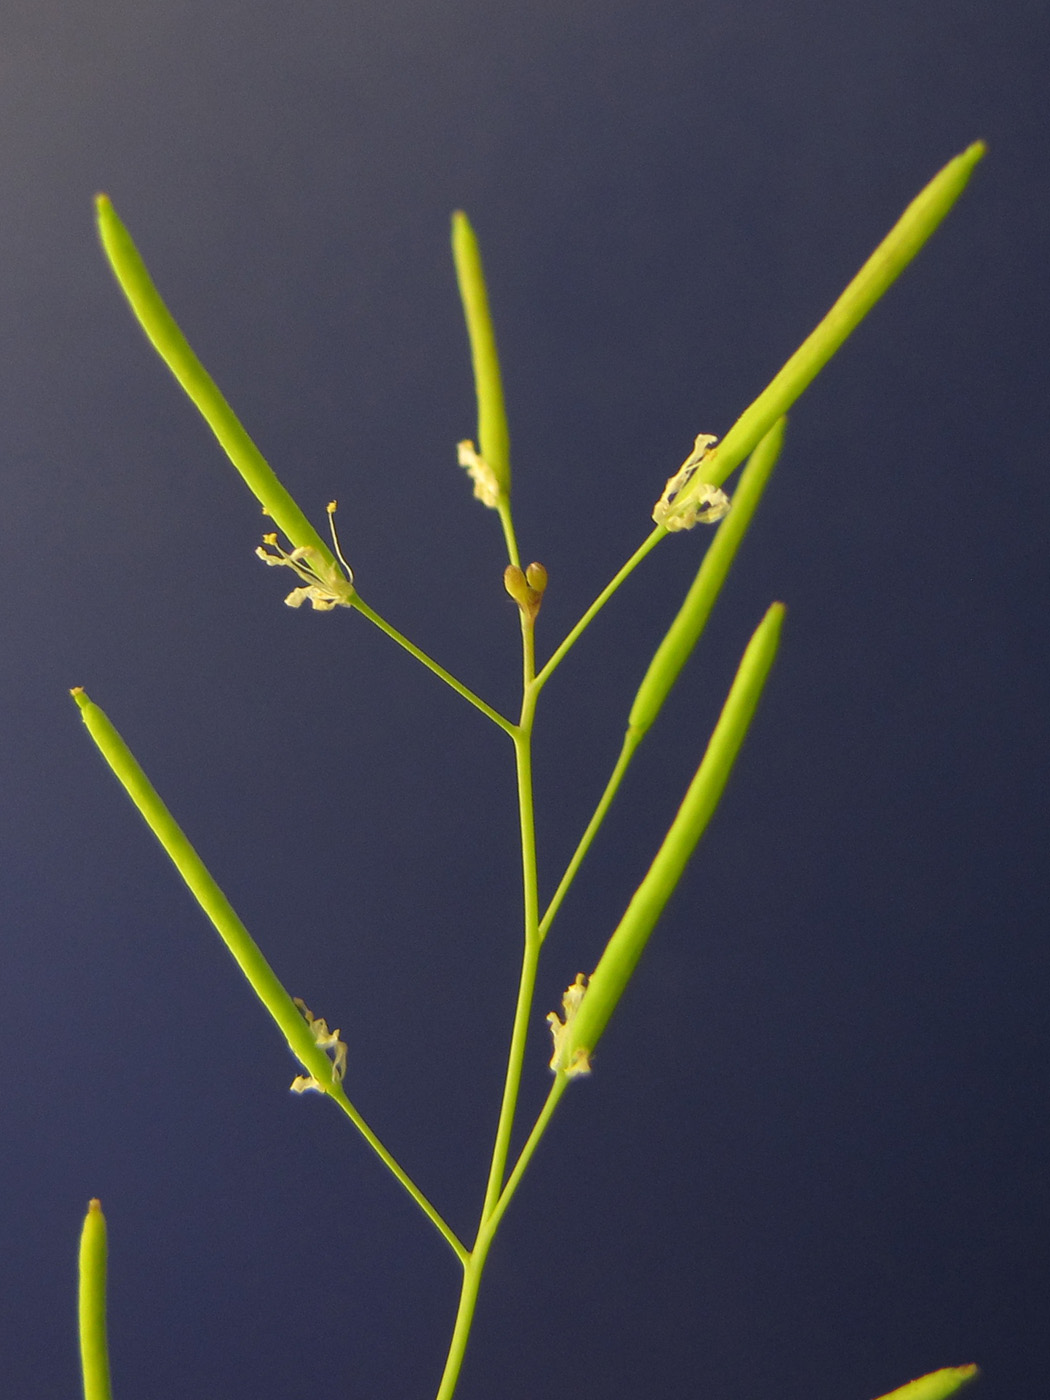 Auch die Schoten von Arabidopsis öffnen sich schneller, je wärmer die Umgebungstemperatur ist. 5 °C machen dabei einen deutlichen Unterschied.